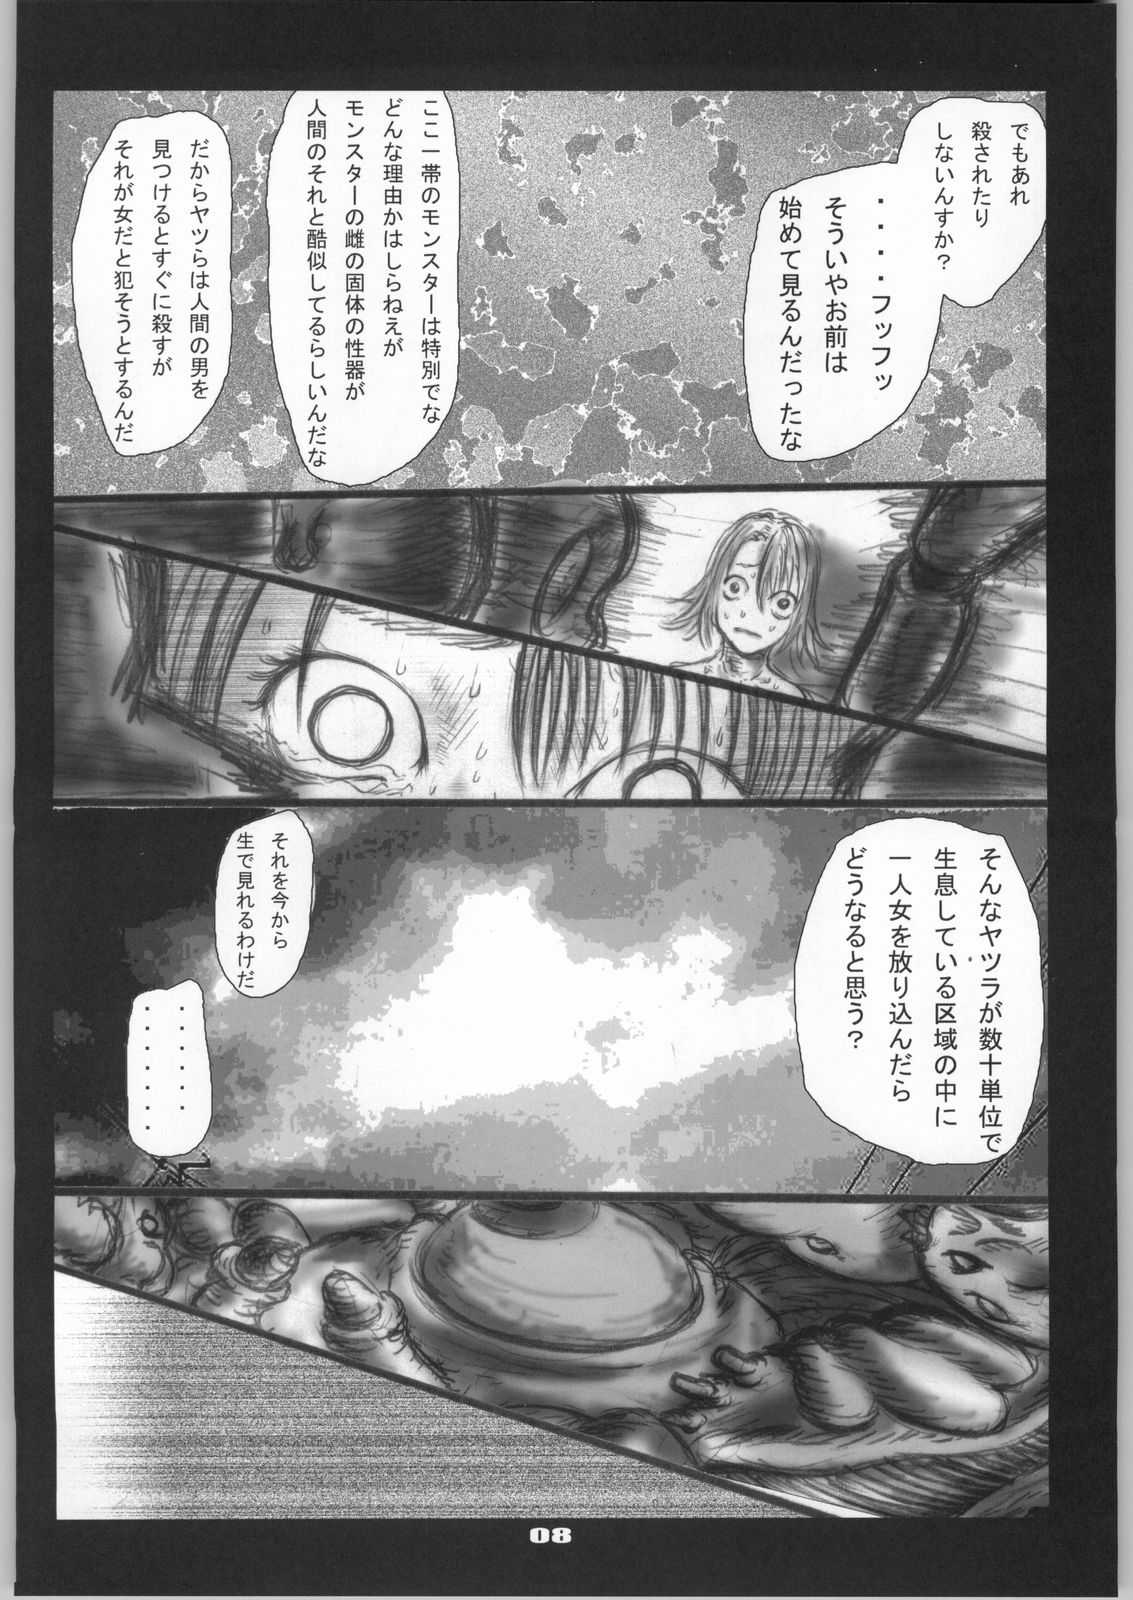 [Zettai Kanzen Rippoutai] Shokushu Matsuri Yu*na Ikenie Kansha Sai (Final Fantasy VII) [絶対完全立方体] 触手祭ユ○ナ生贄感謝祭 (ファイナルファンタジーVII)